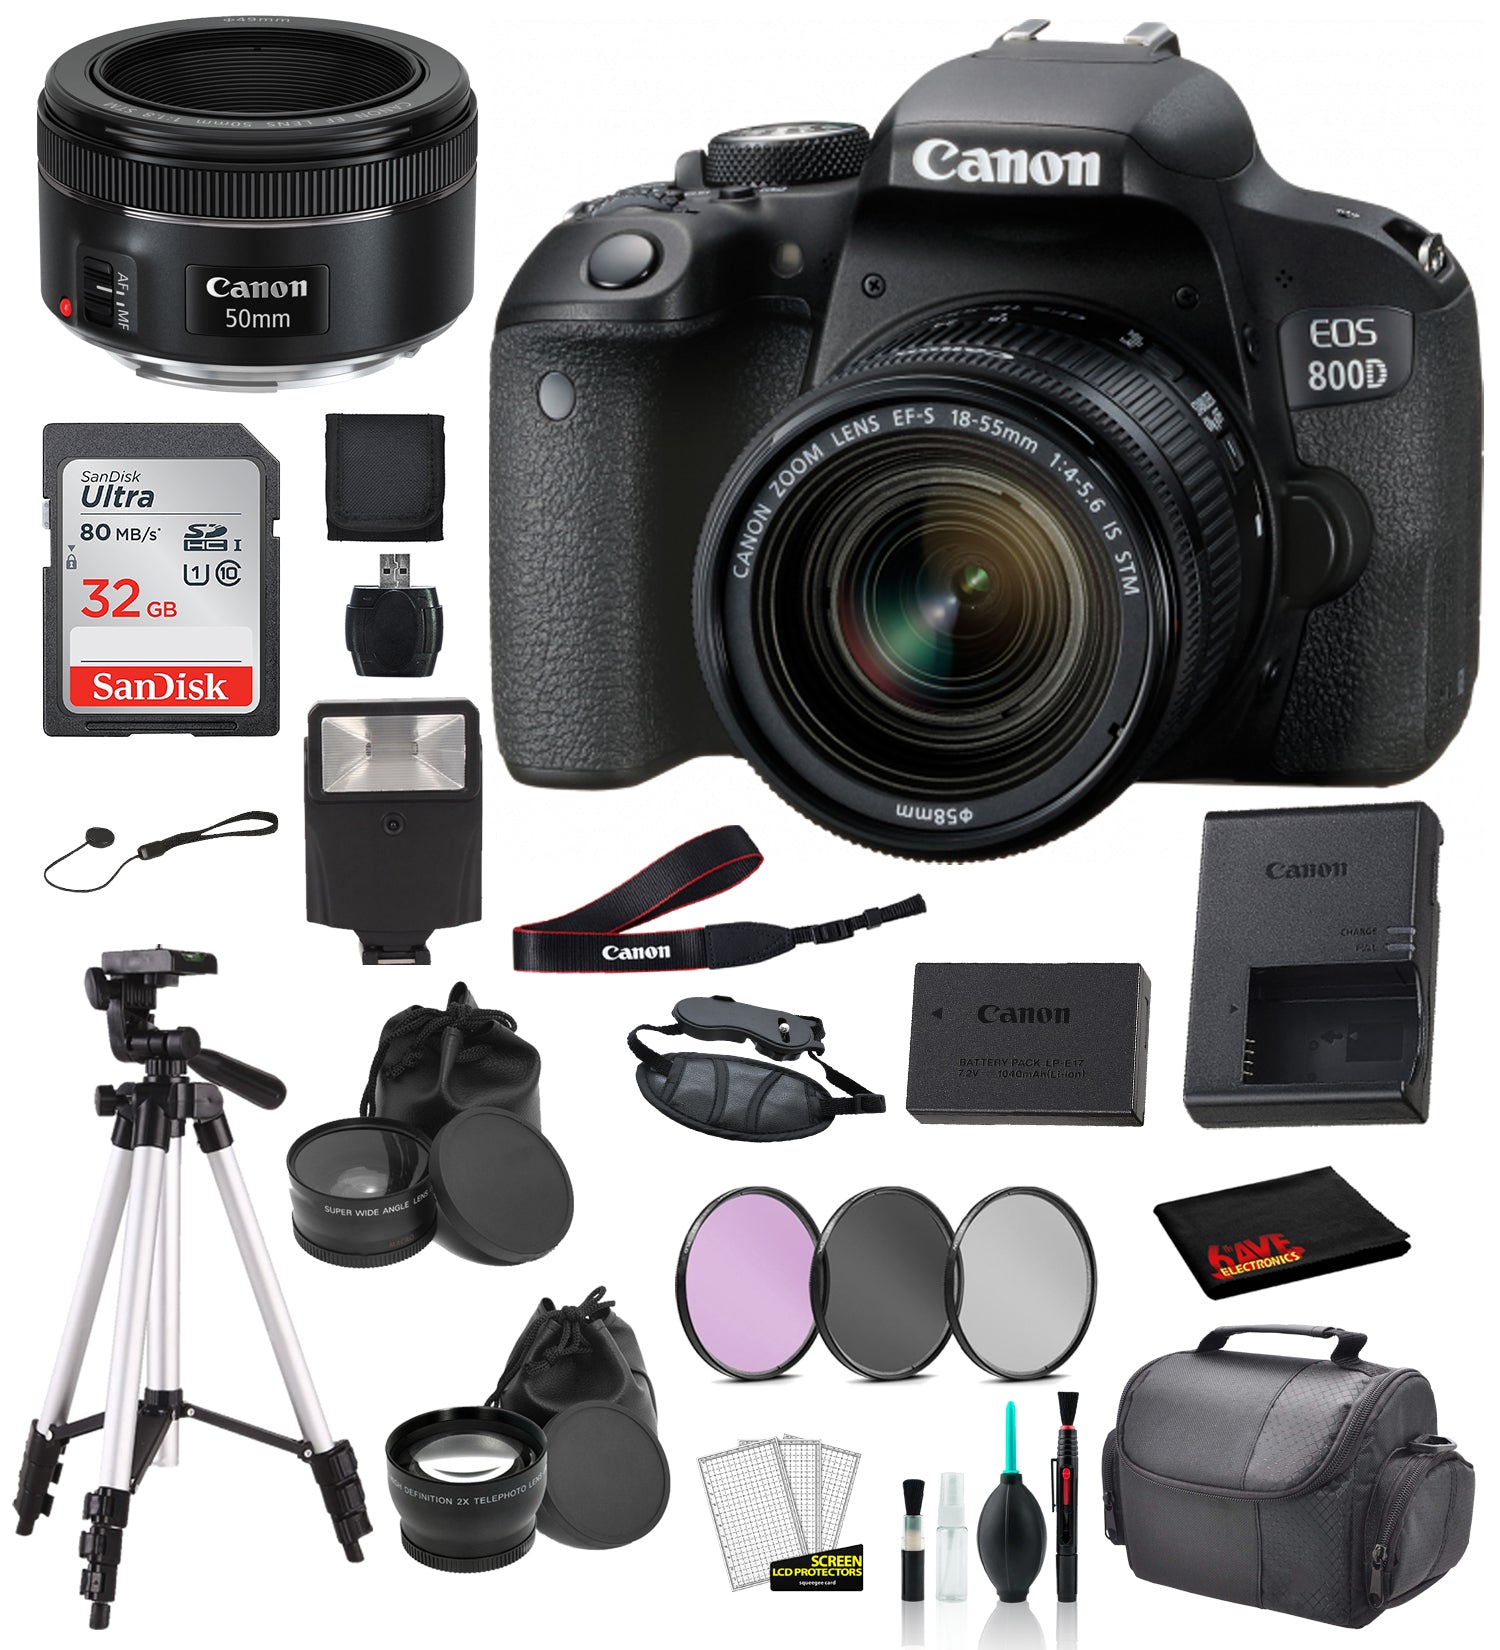 Canon EOS 800D (Rebel T7i) 18-55mm IS STM and EF 50mm f/1.8 STM Lens Bundle �SanDisk 32gb  + Filters + - International